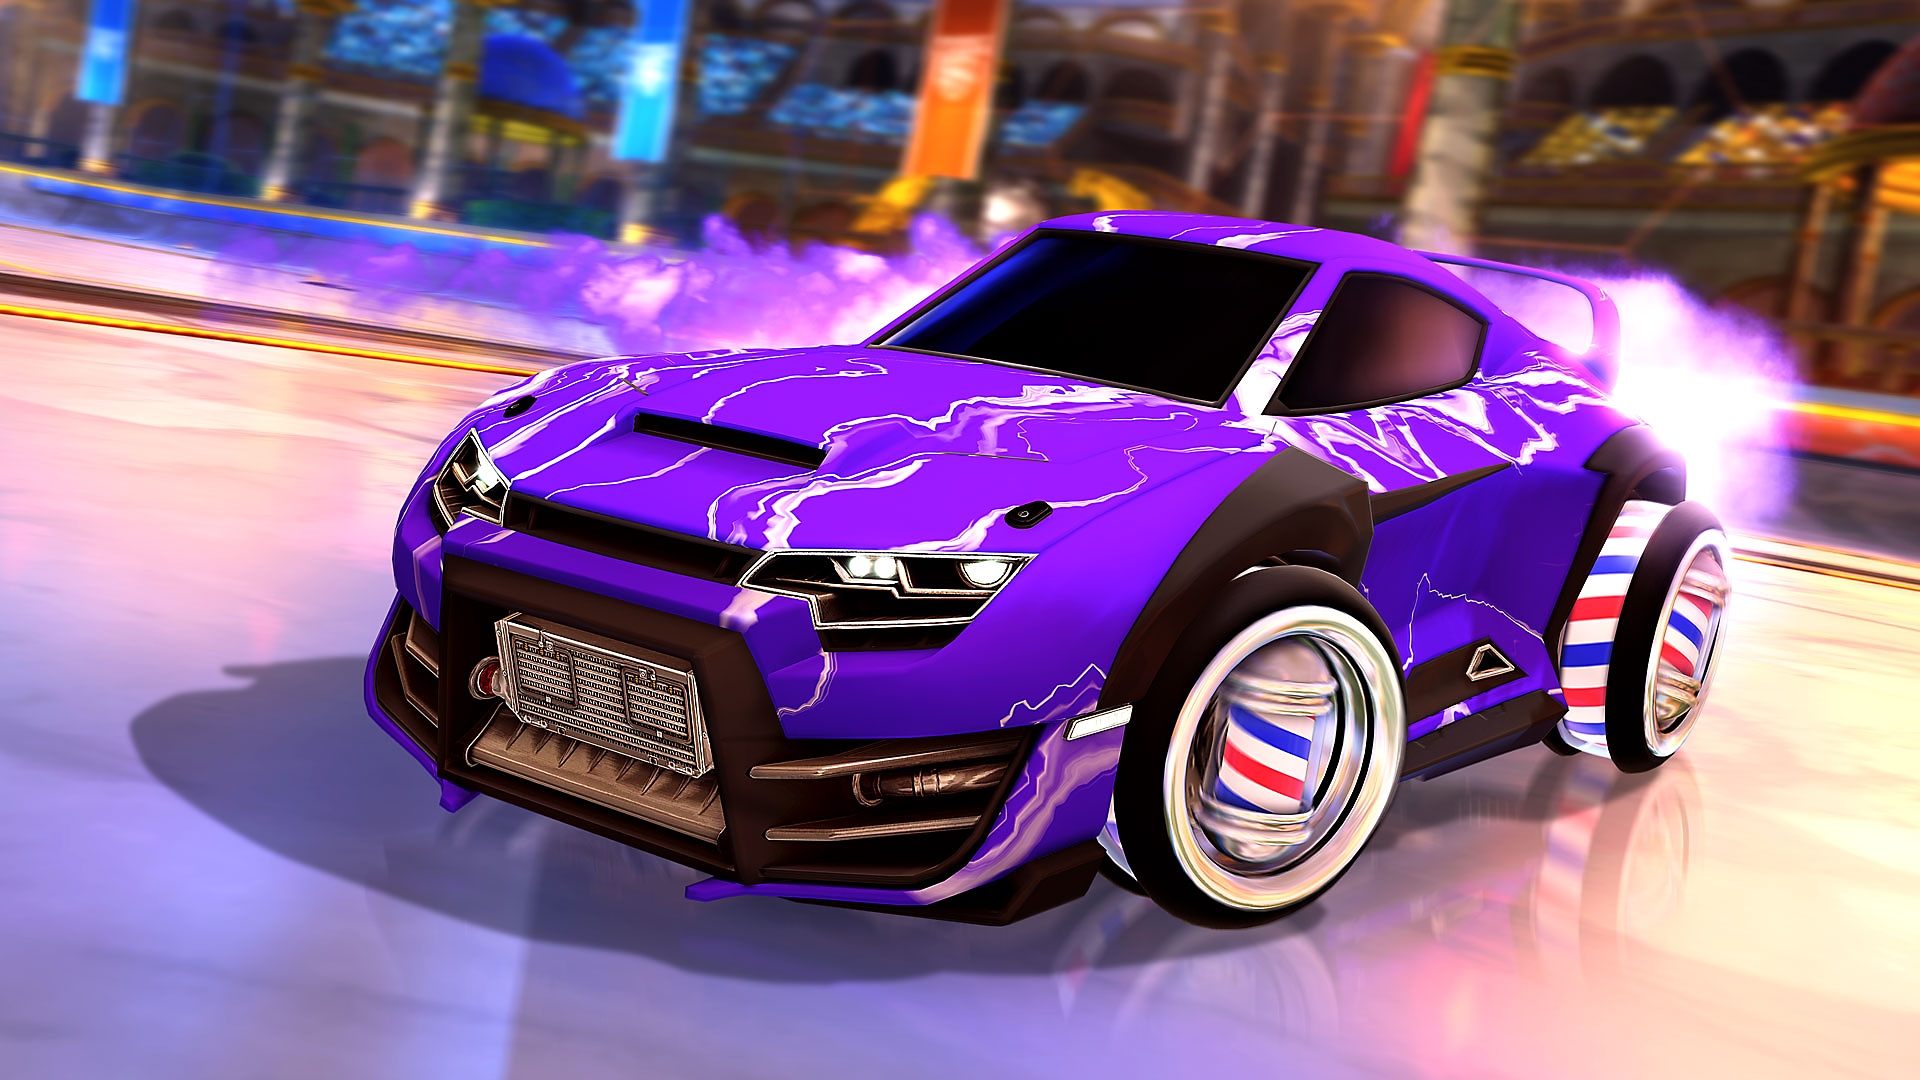 Rocket League screenshot showing purple car